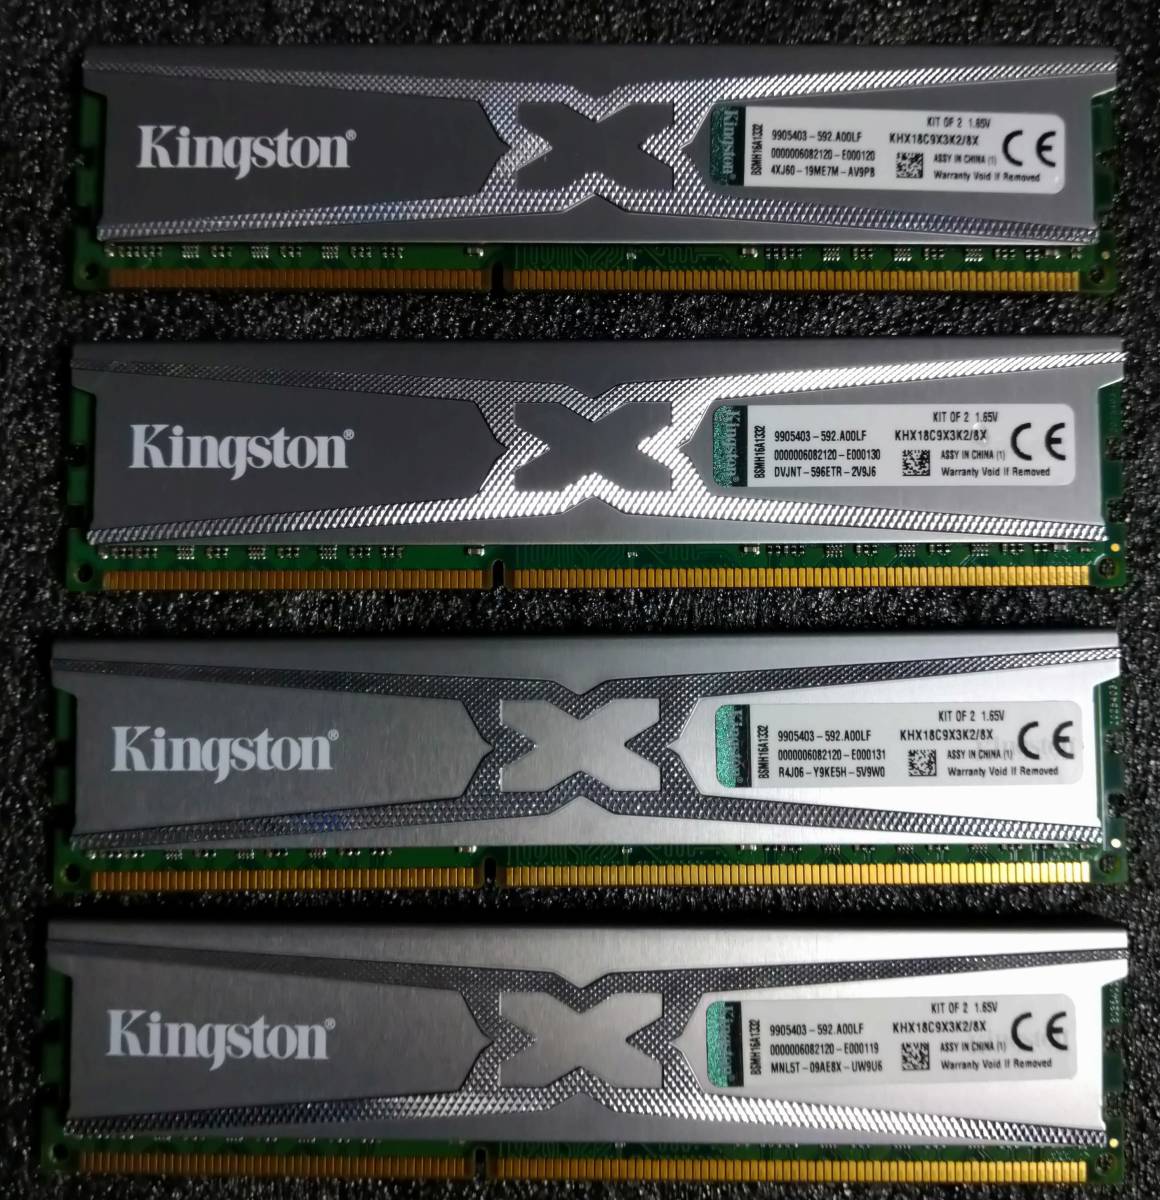 【中古】DDR3メモリ 16GB(4GB4枚組) Kingston KHX18C9X3K2/8X [DDR3-1866 PC3-14900]